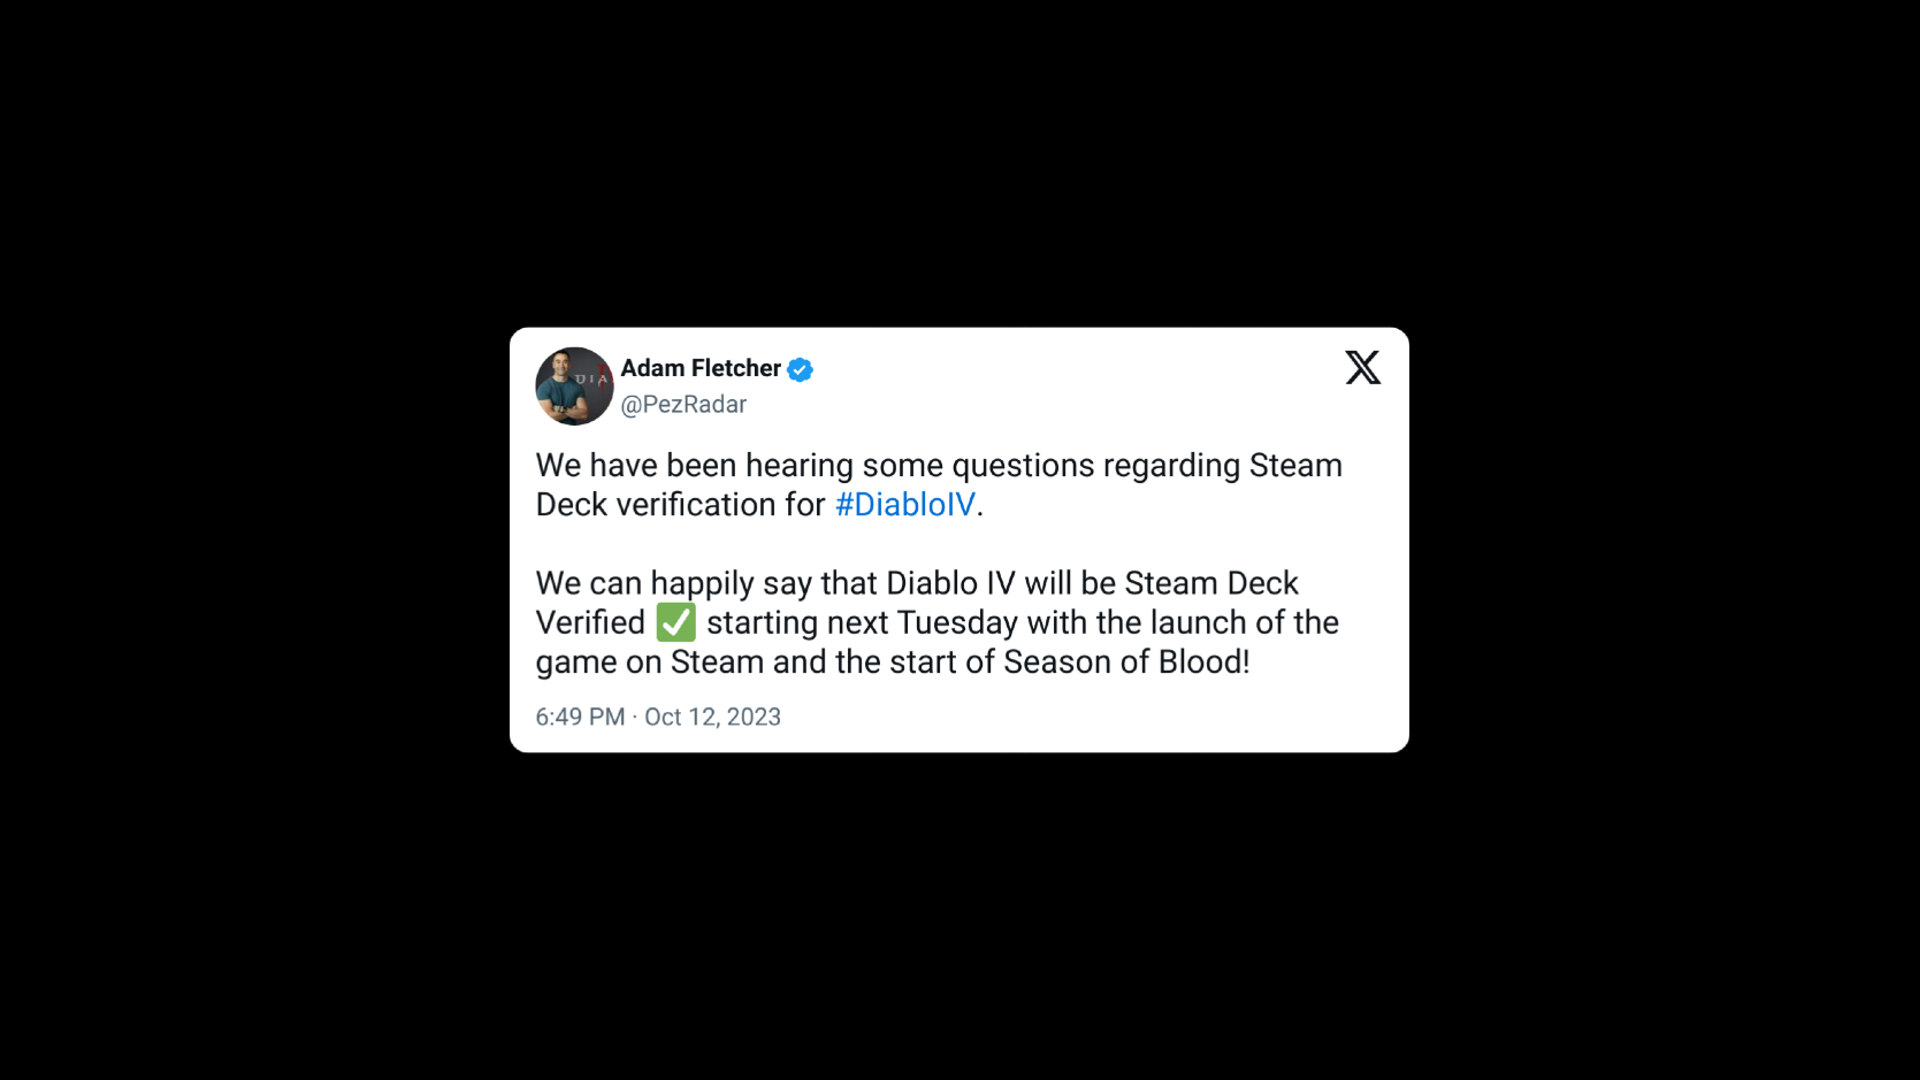 Diablo 4 developer confirms in post on Twitter that Diablo 4 is Steam Deck verified